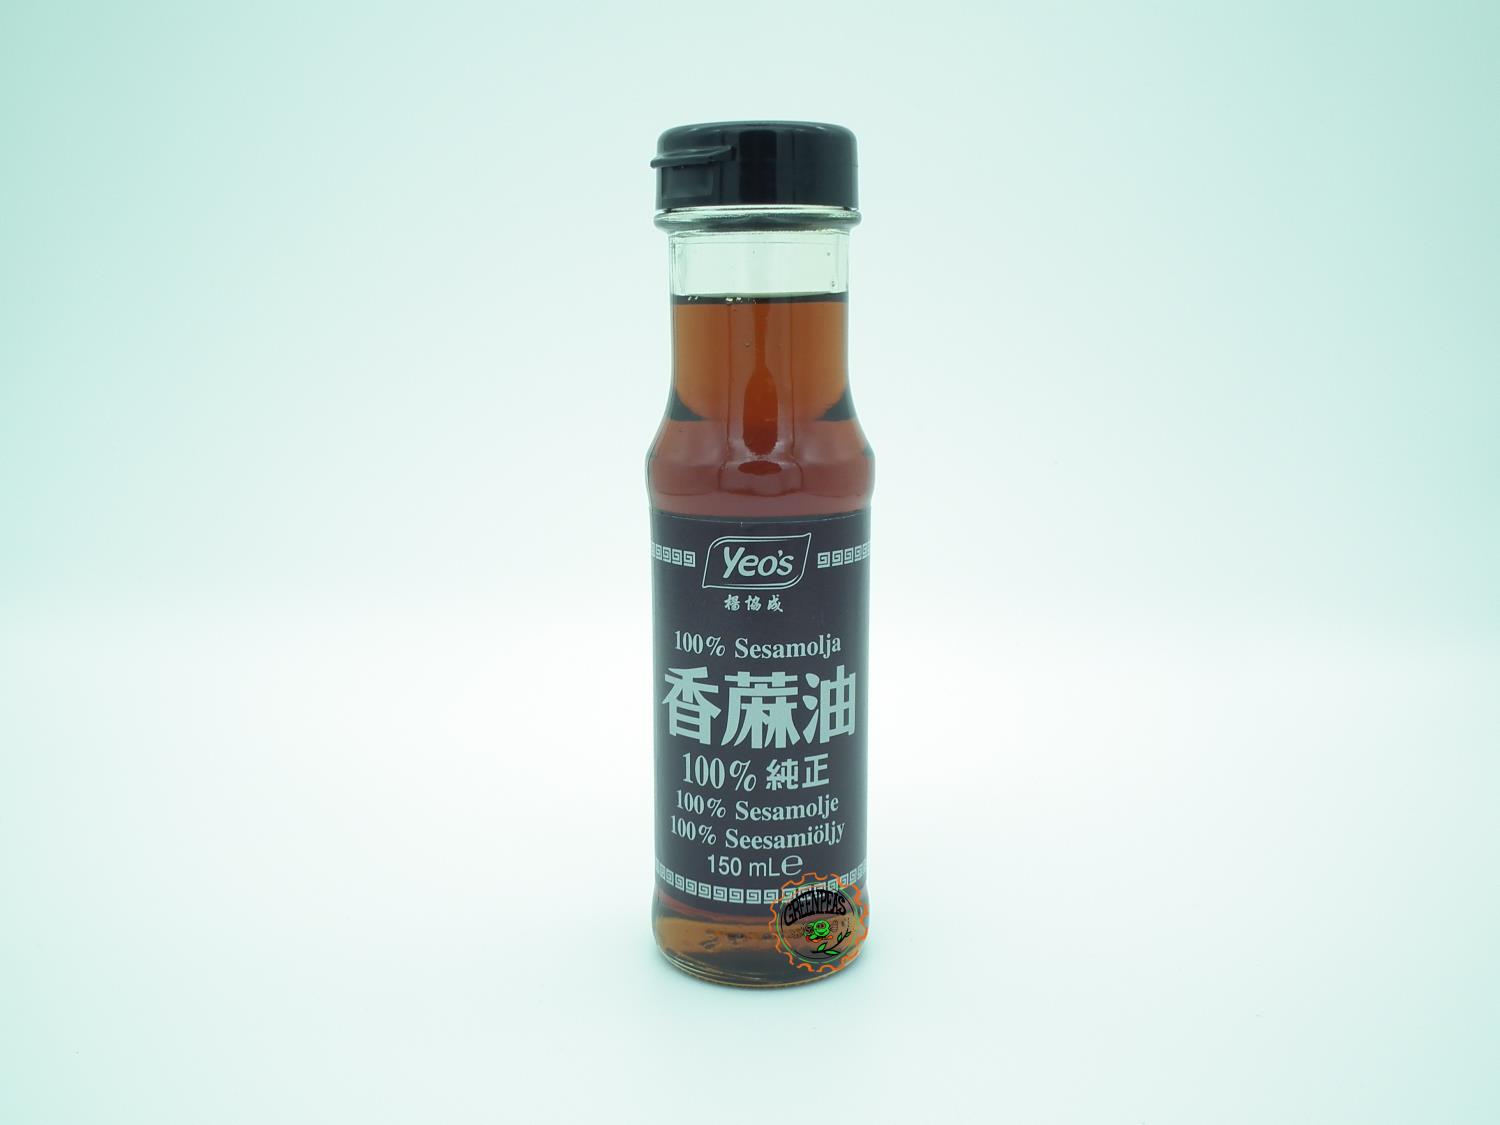 YEO'S Pure Sesame Oil 375ml kk